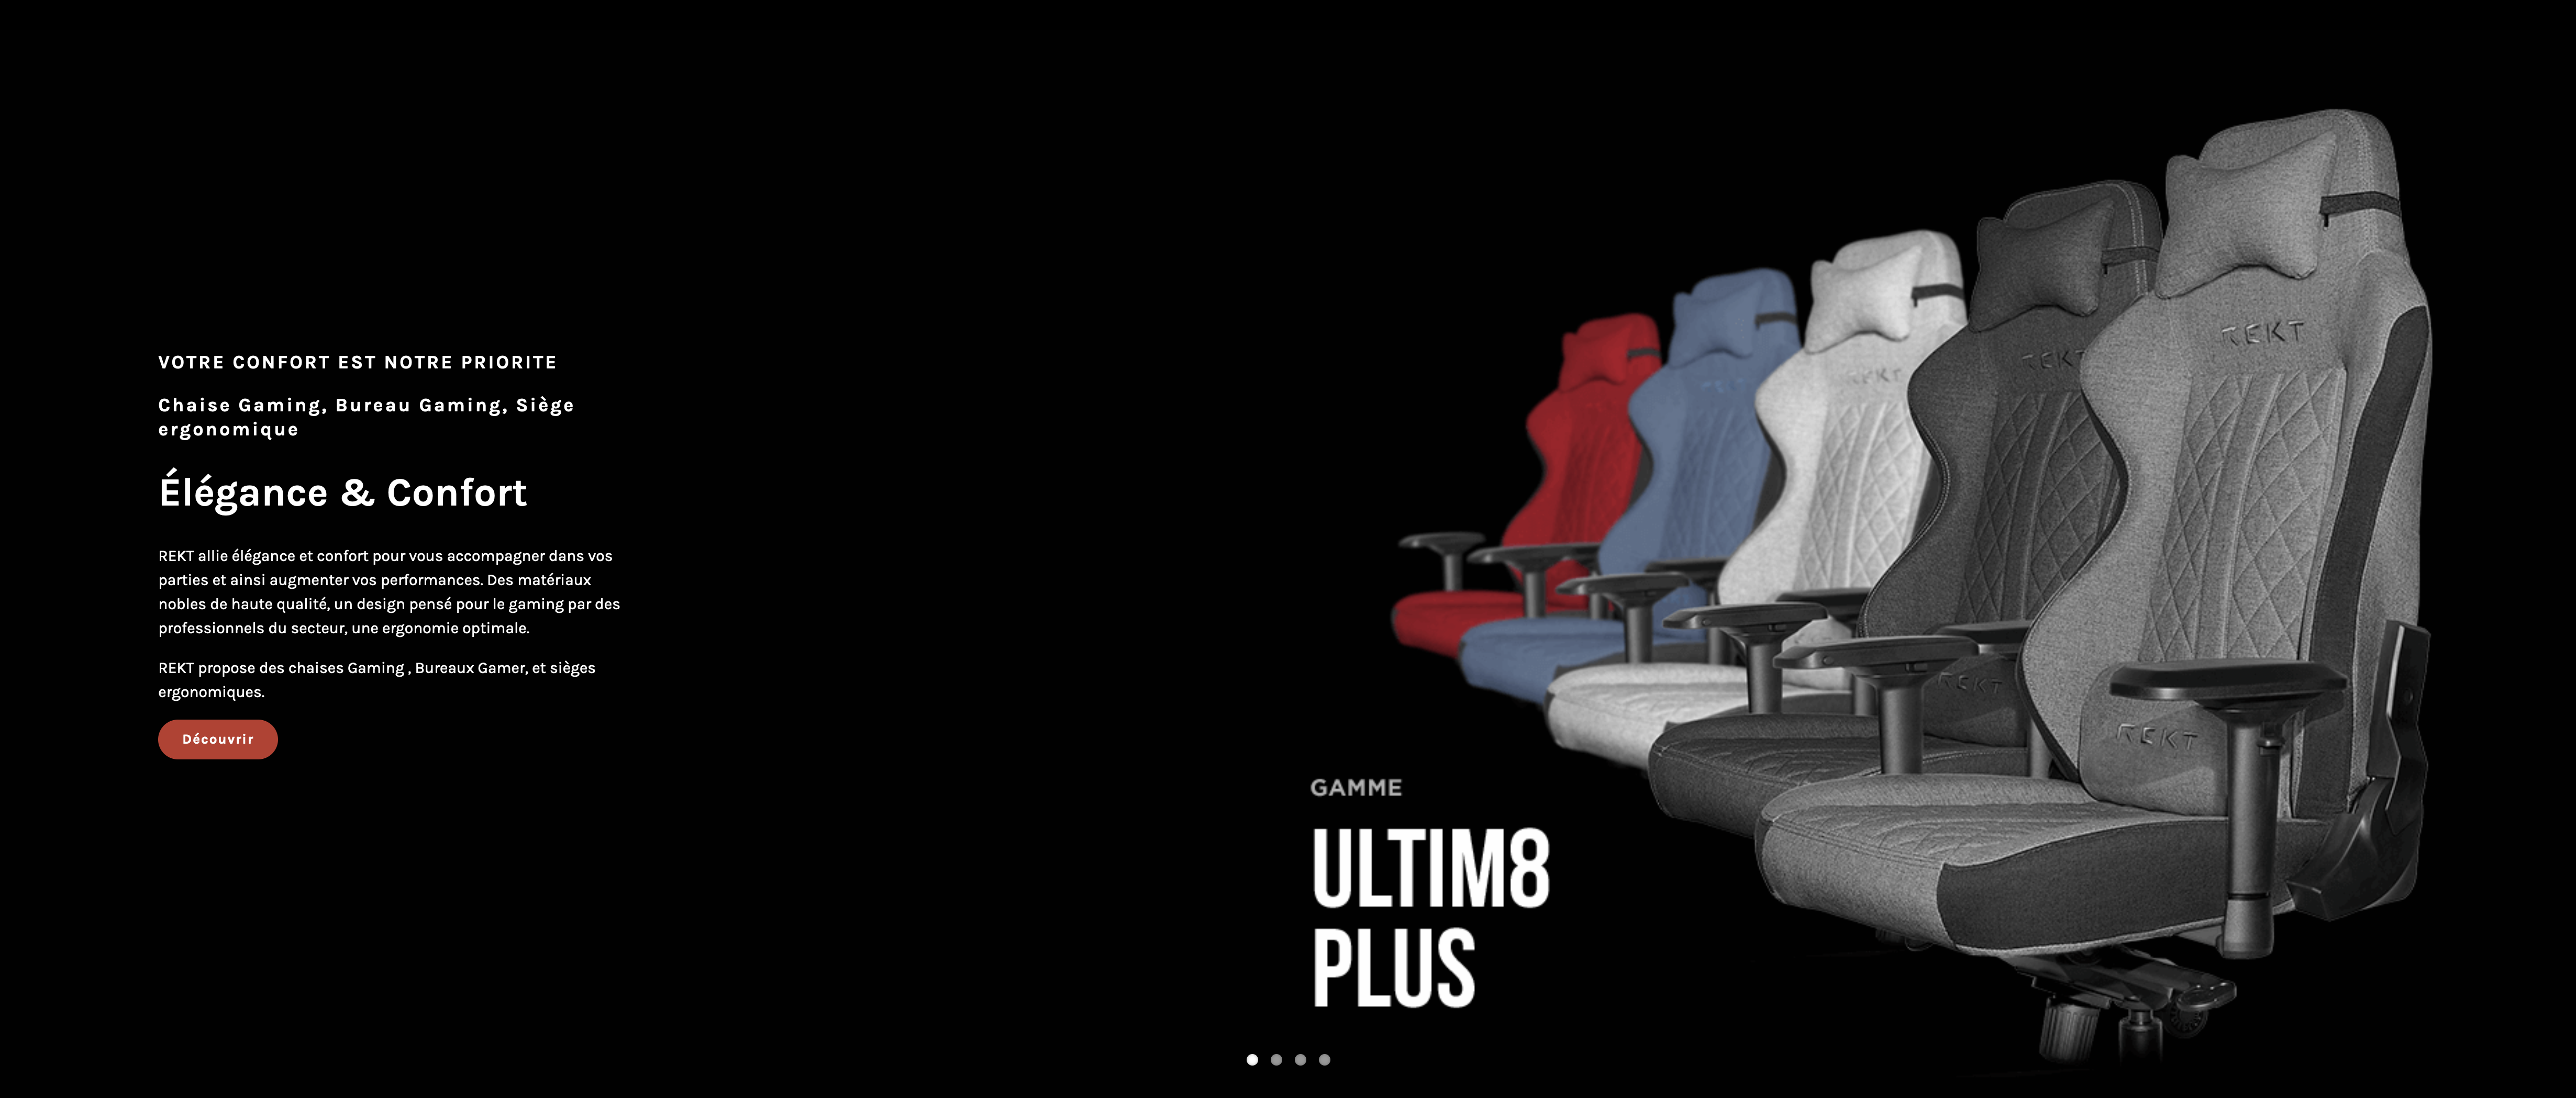 Mon avis sur la chaise gaming REKT ULTIM8 PLUS